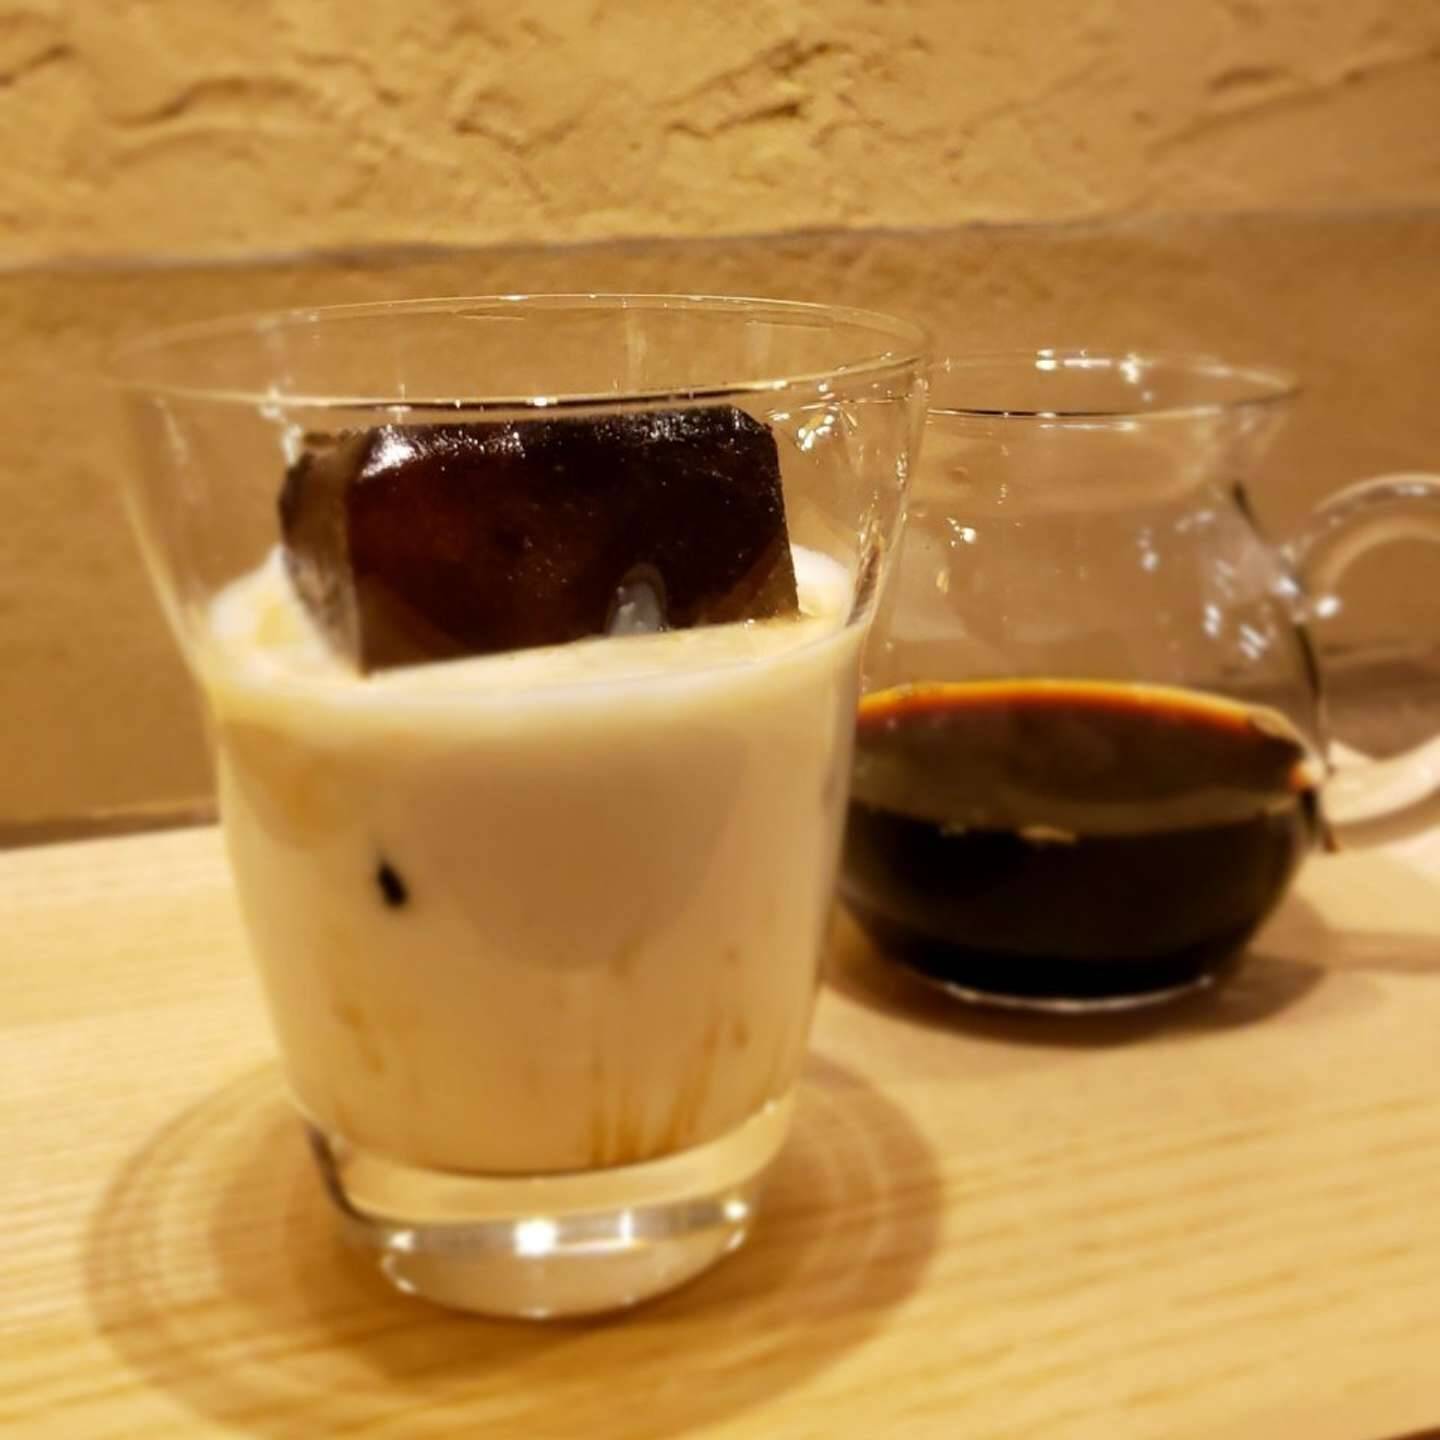 アイスコーヒーを注文 出てきたのはホットコーヒーと 茶色いキューブ 喫茶店のオシャレで粋な一杯に反響 21年4月7日 エキサイトニュース